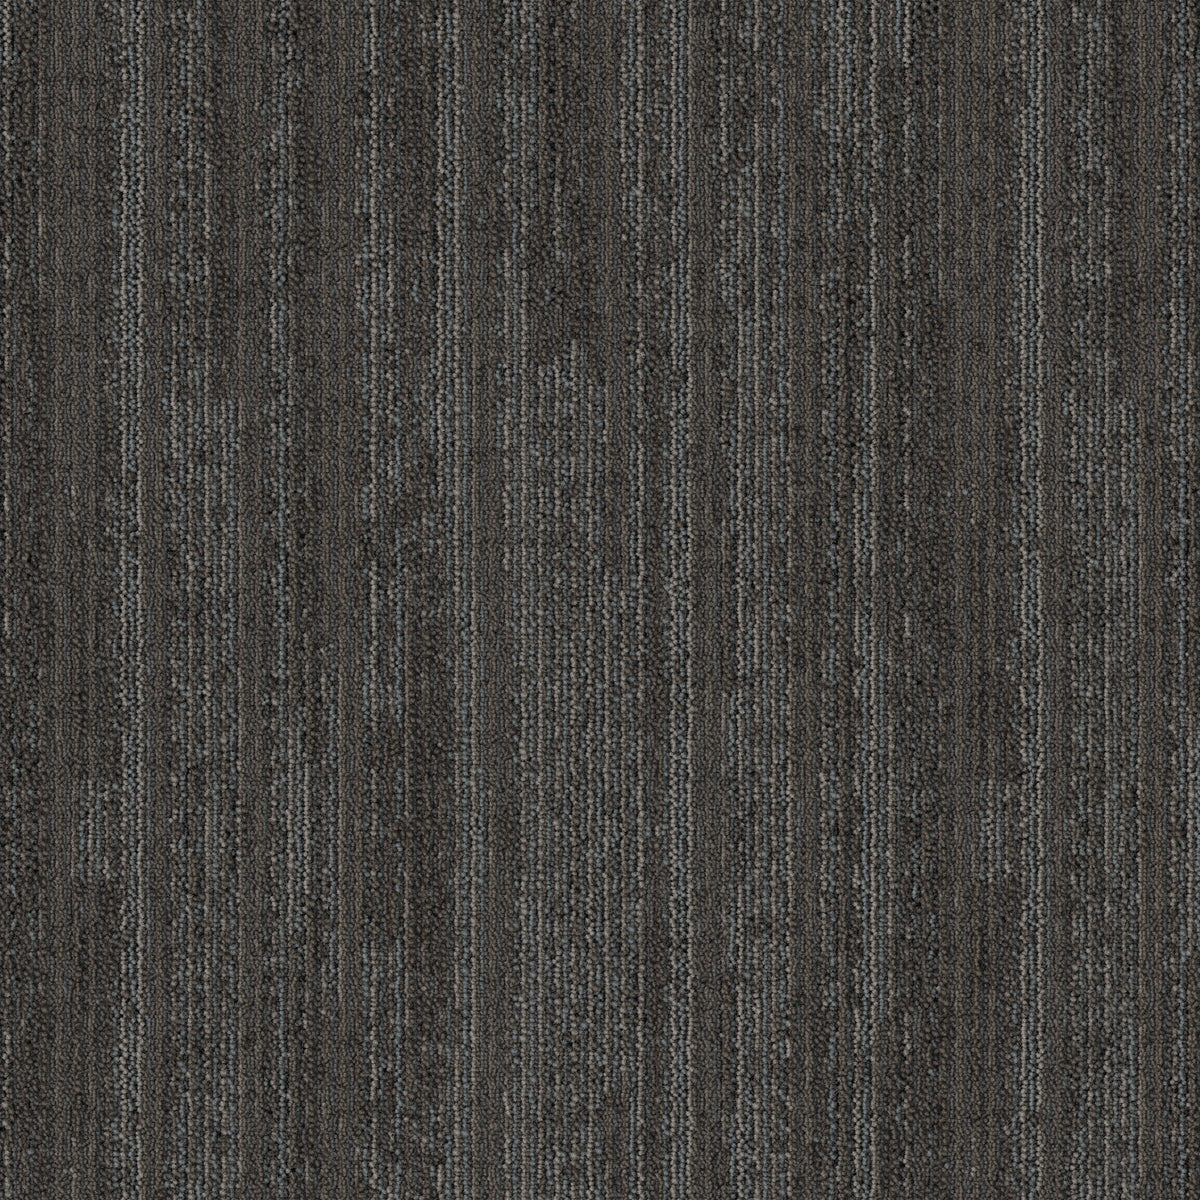 Mohawk Group - Artisanal - Blended Twist - Carpet Tile - Mist